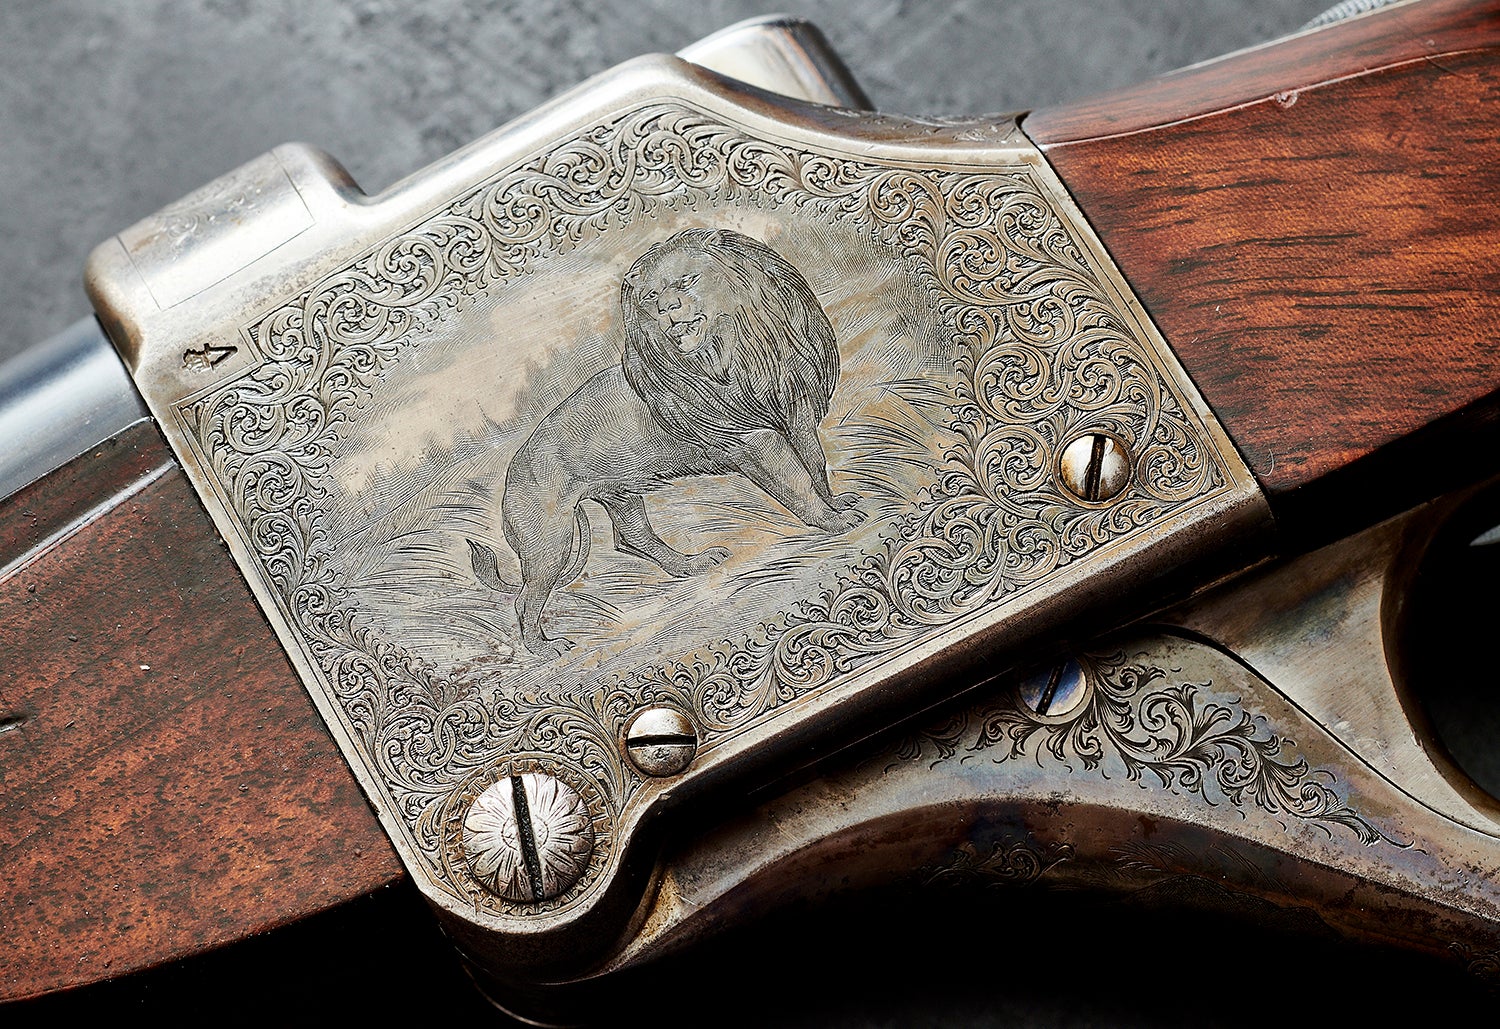 Engraving of lion on gun